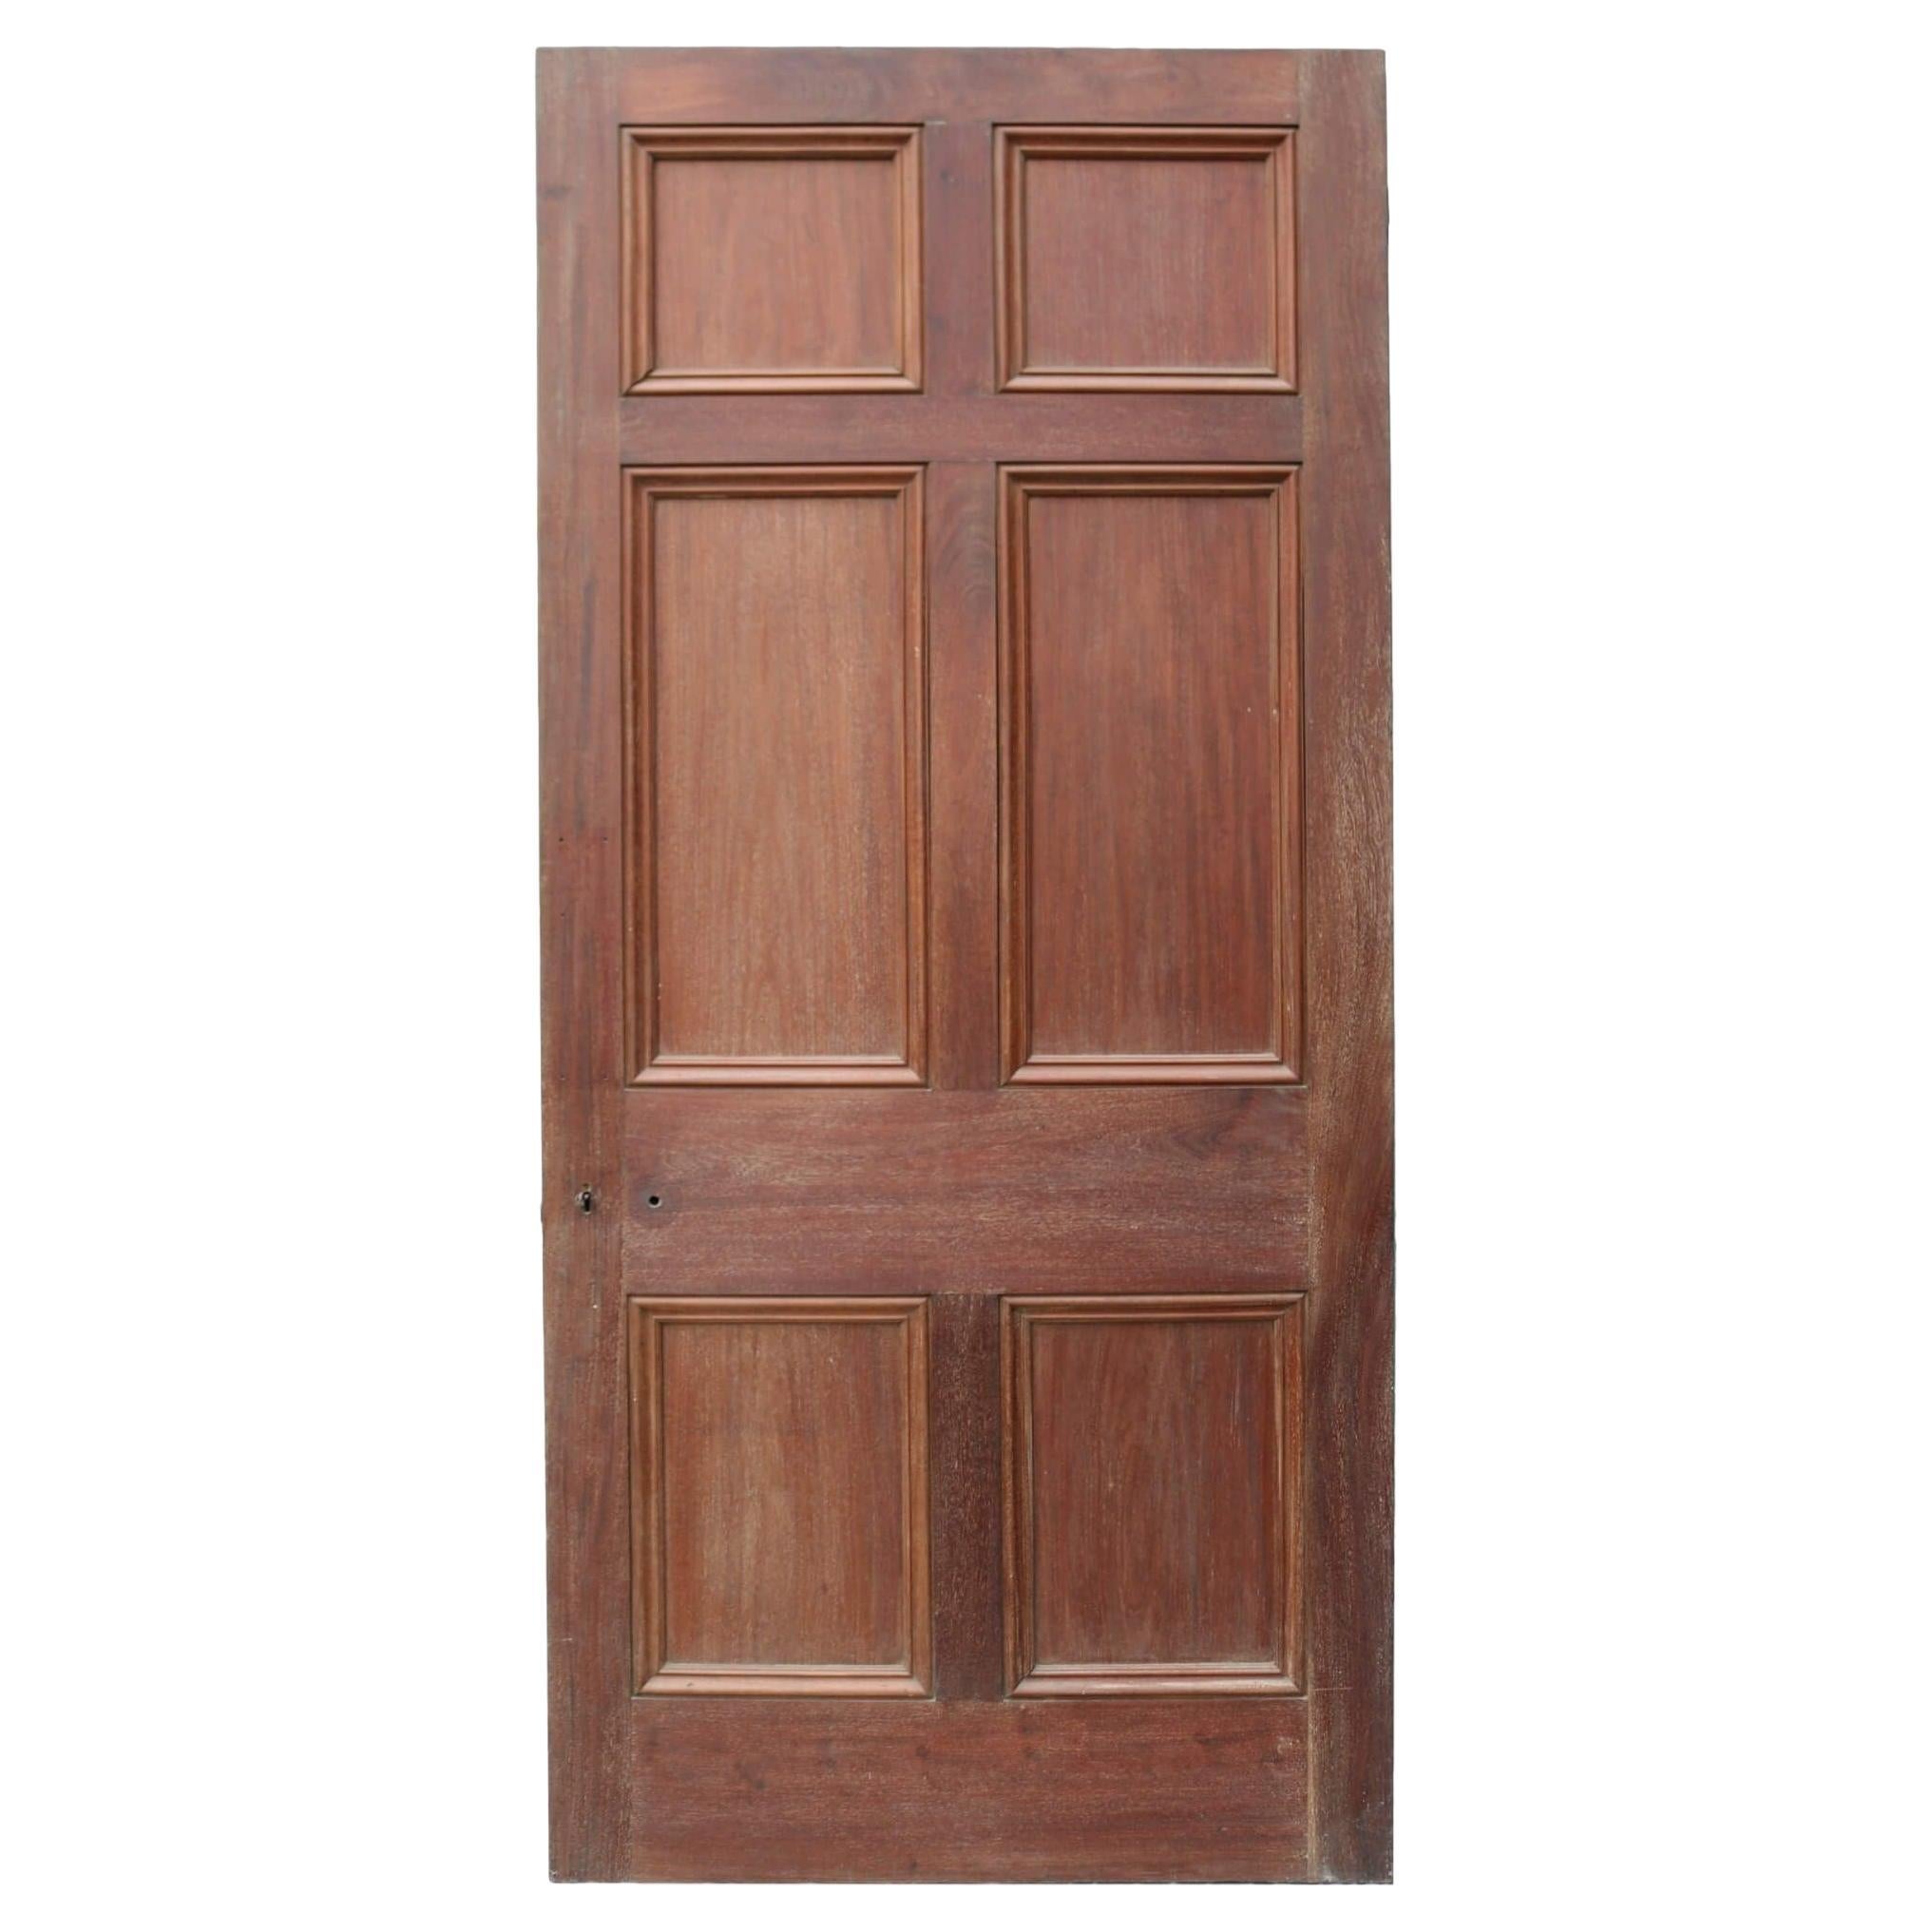 Victorian Mahogany Internal Door For Sale